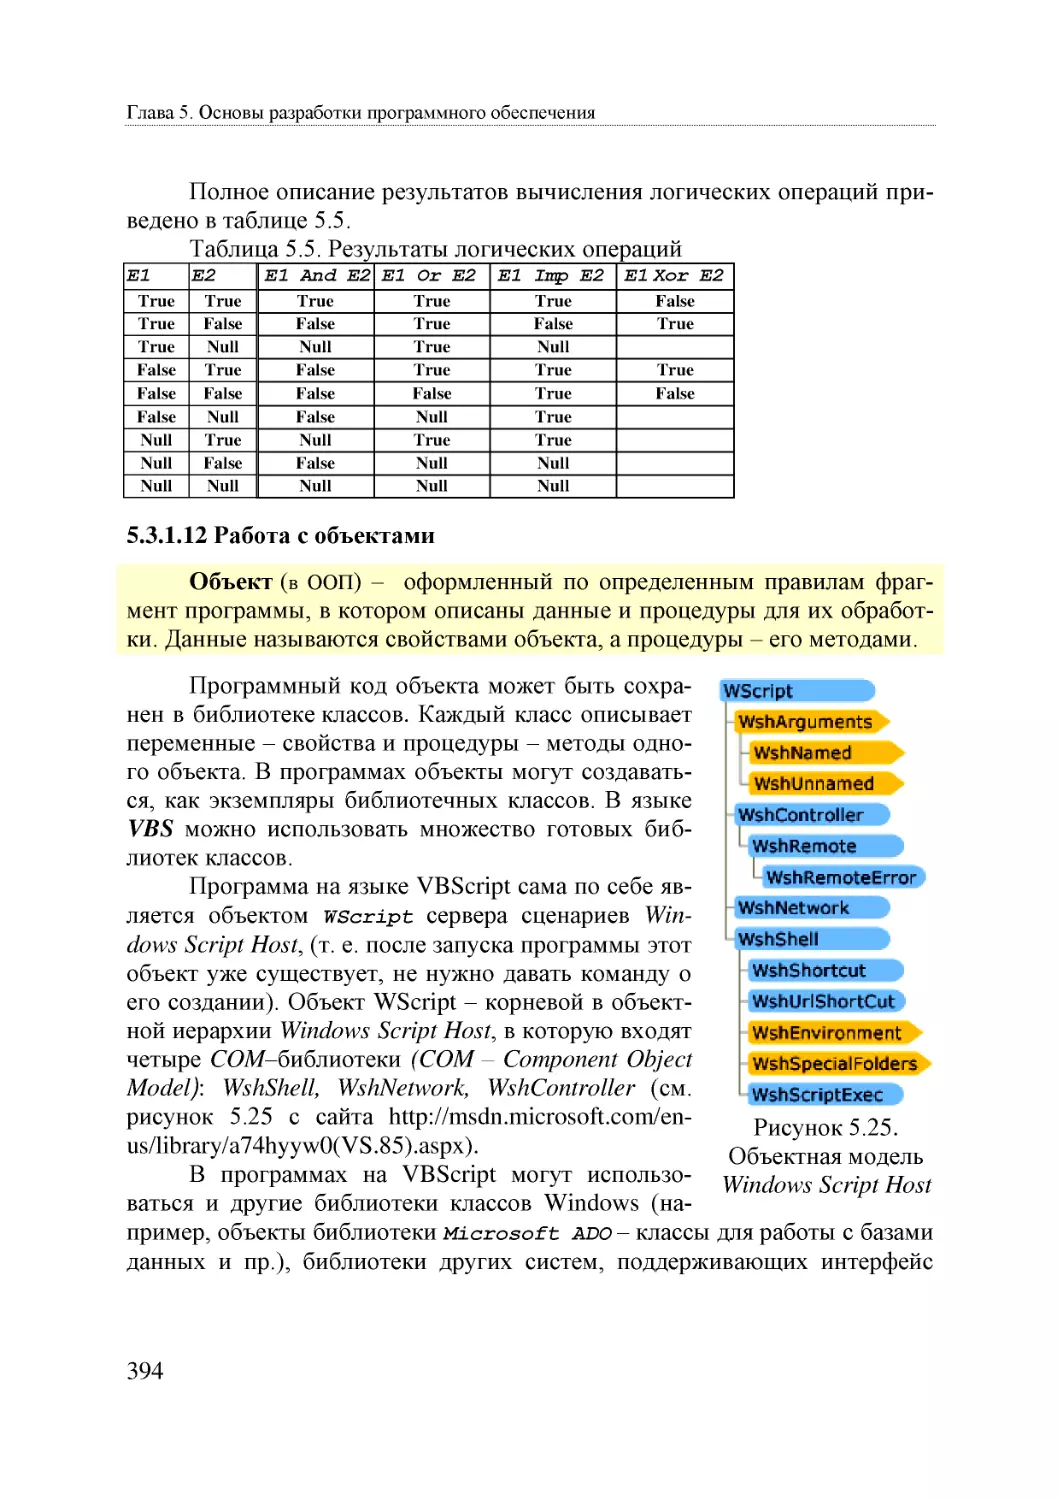 Informatika_Uchebnik_dlya_vuzov_2010 394